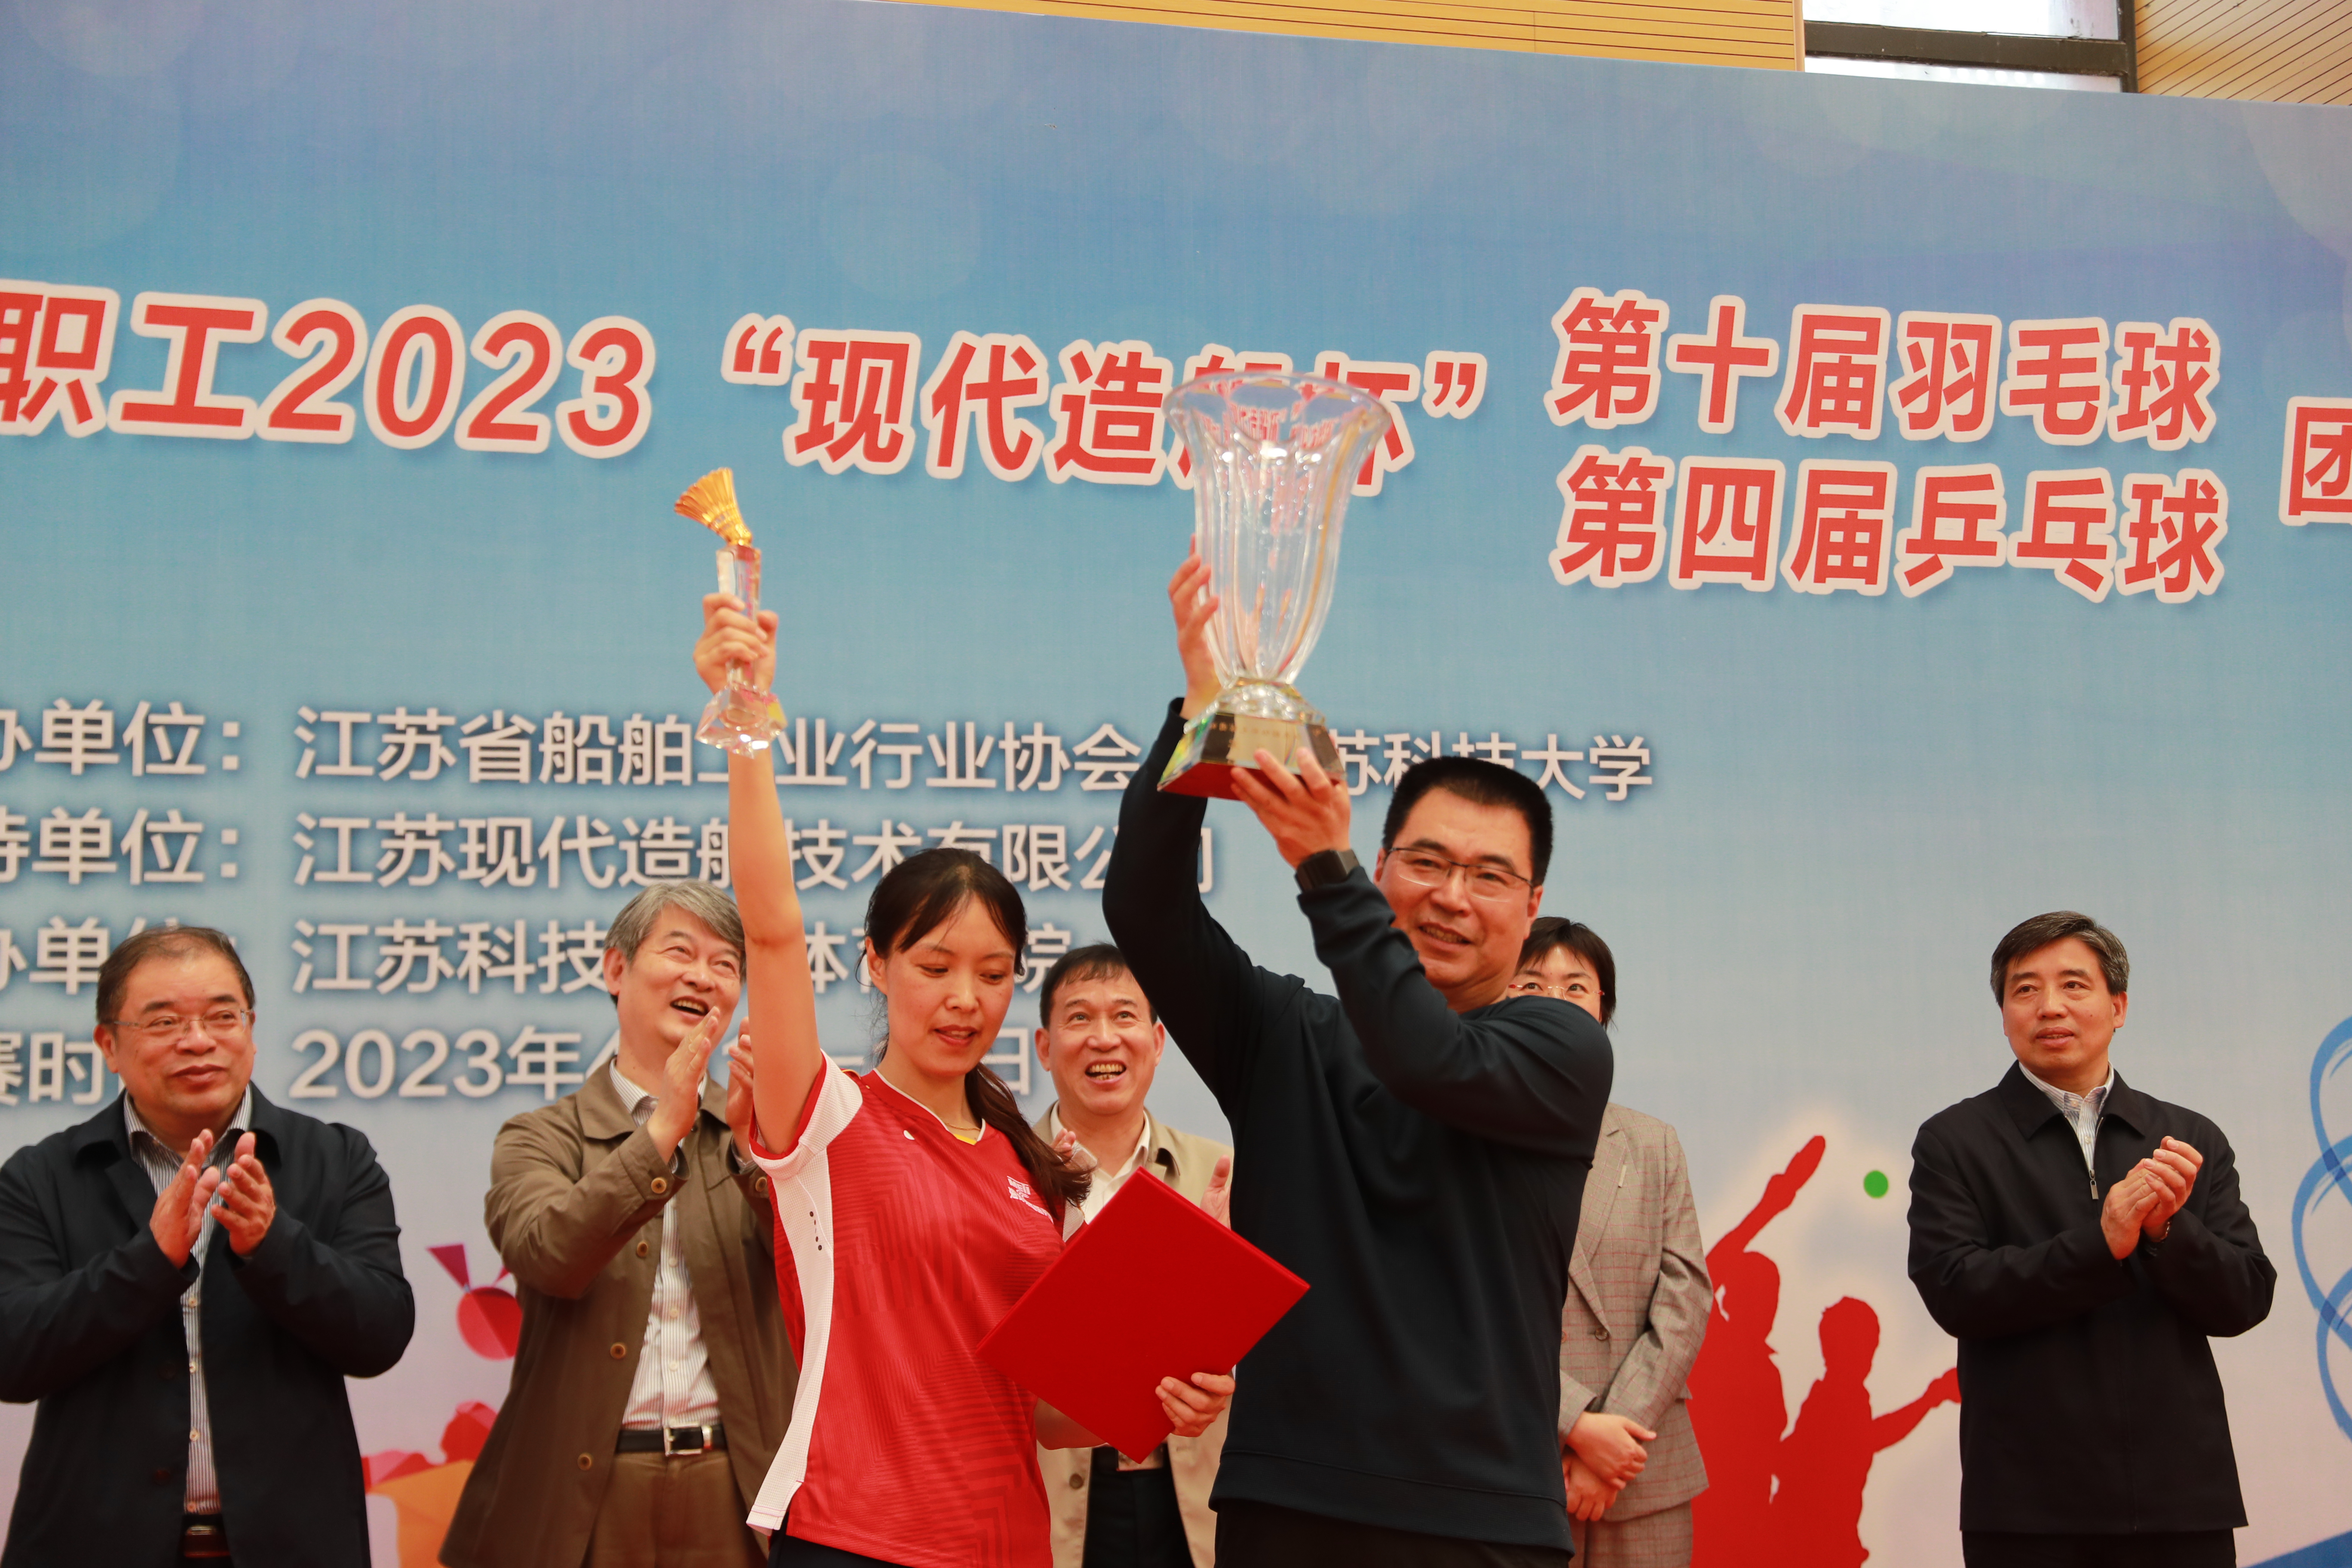 江科大羽毛球队员们将冠军奖杯高高地举起1.jpg